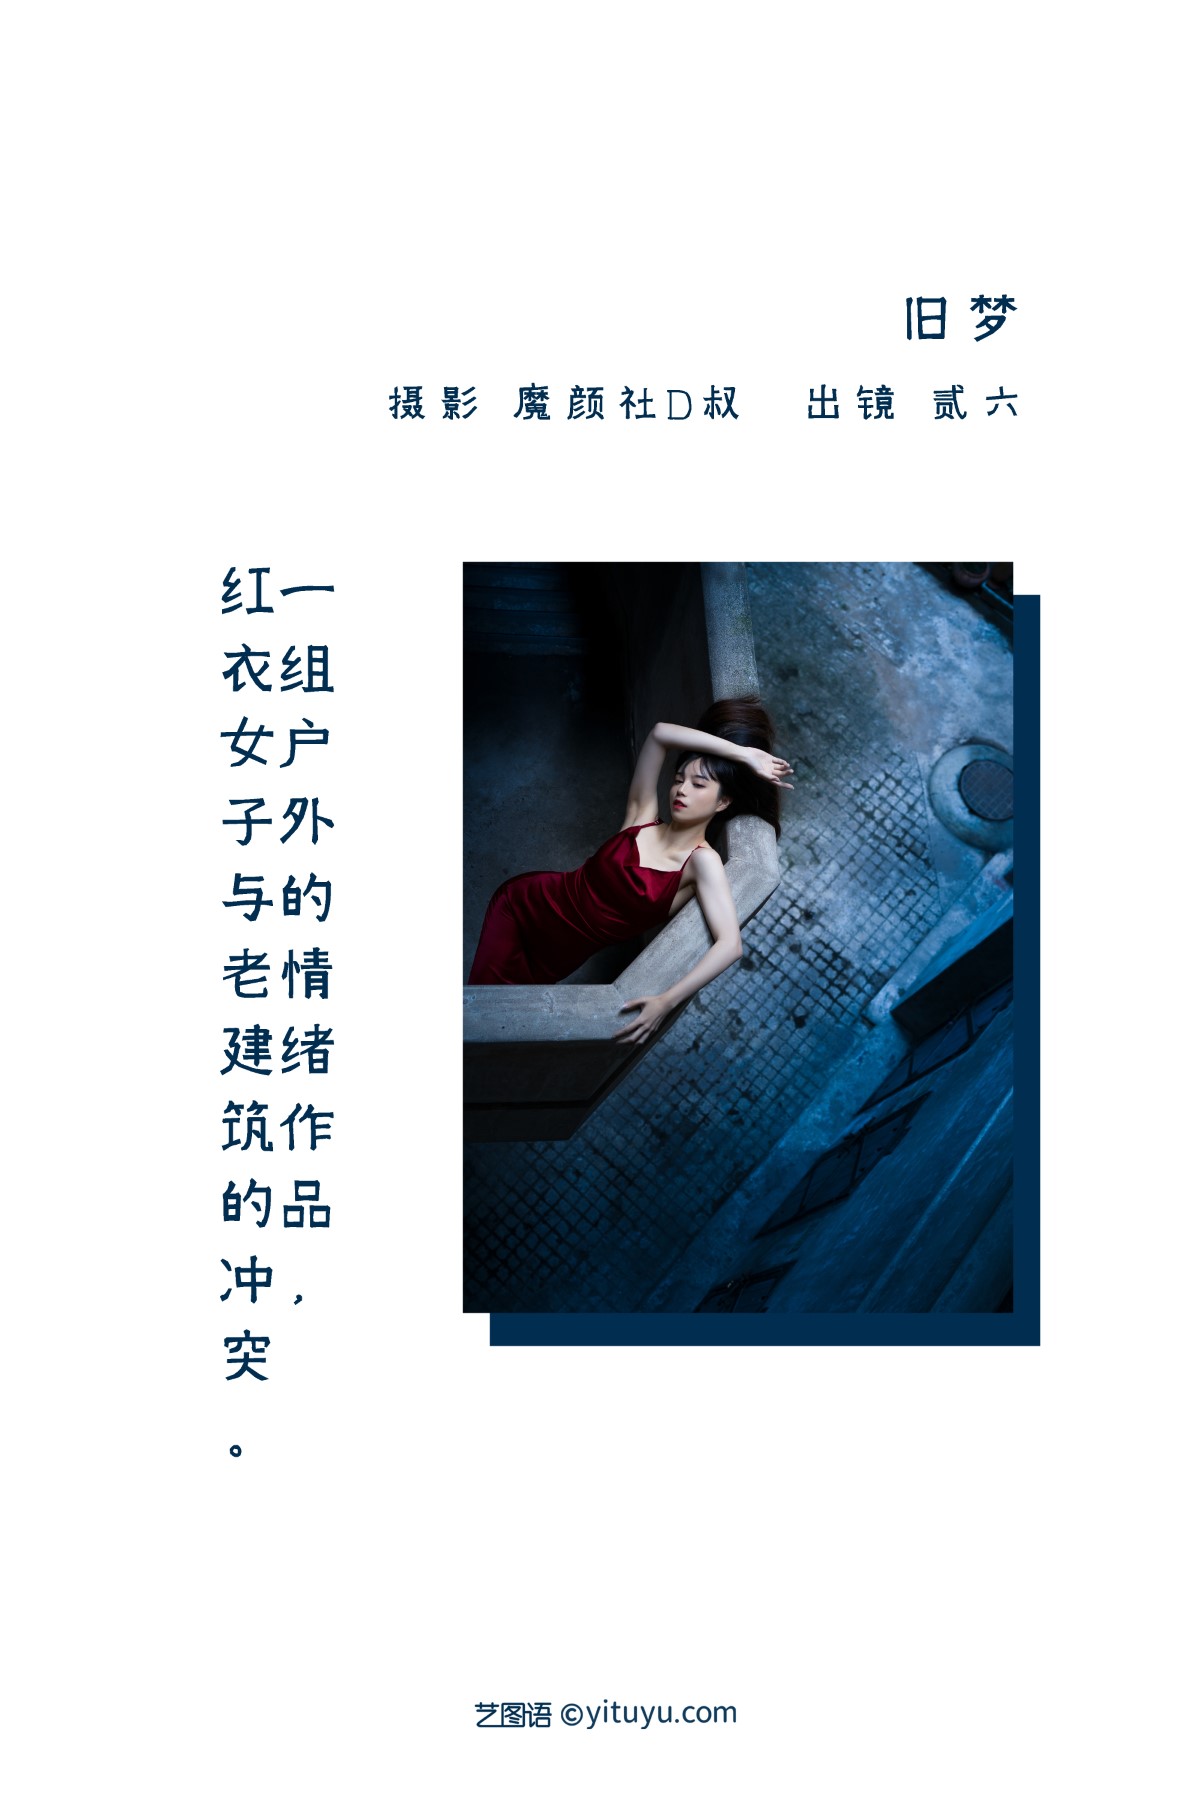 YiTuYu艺图语 Vol 1711 Er Jia Liu 0001 4447160918.jpg